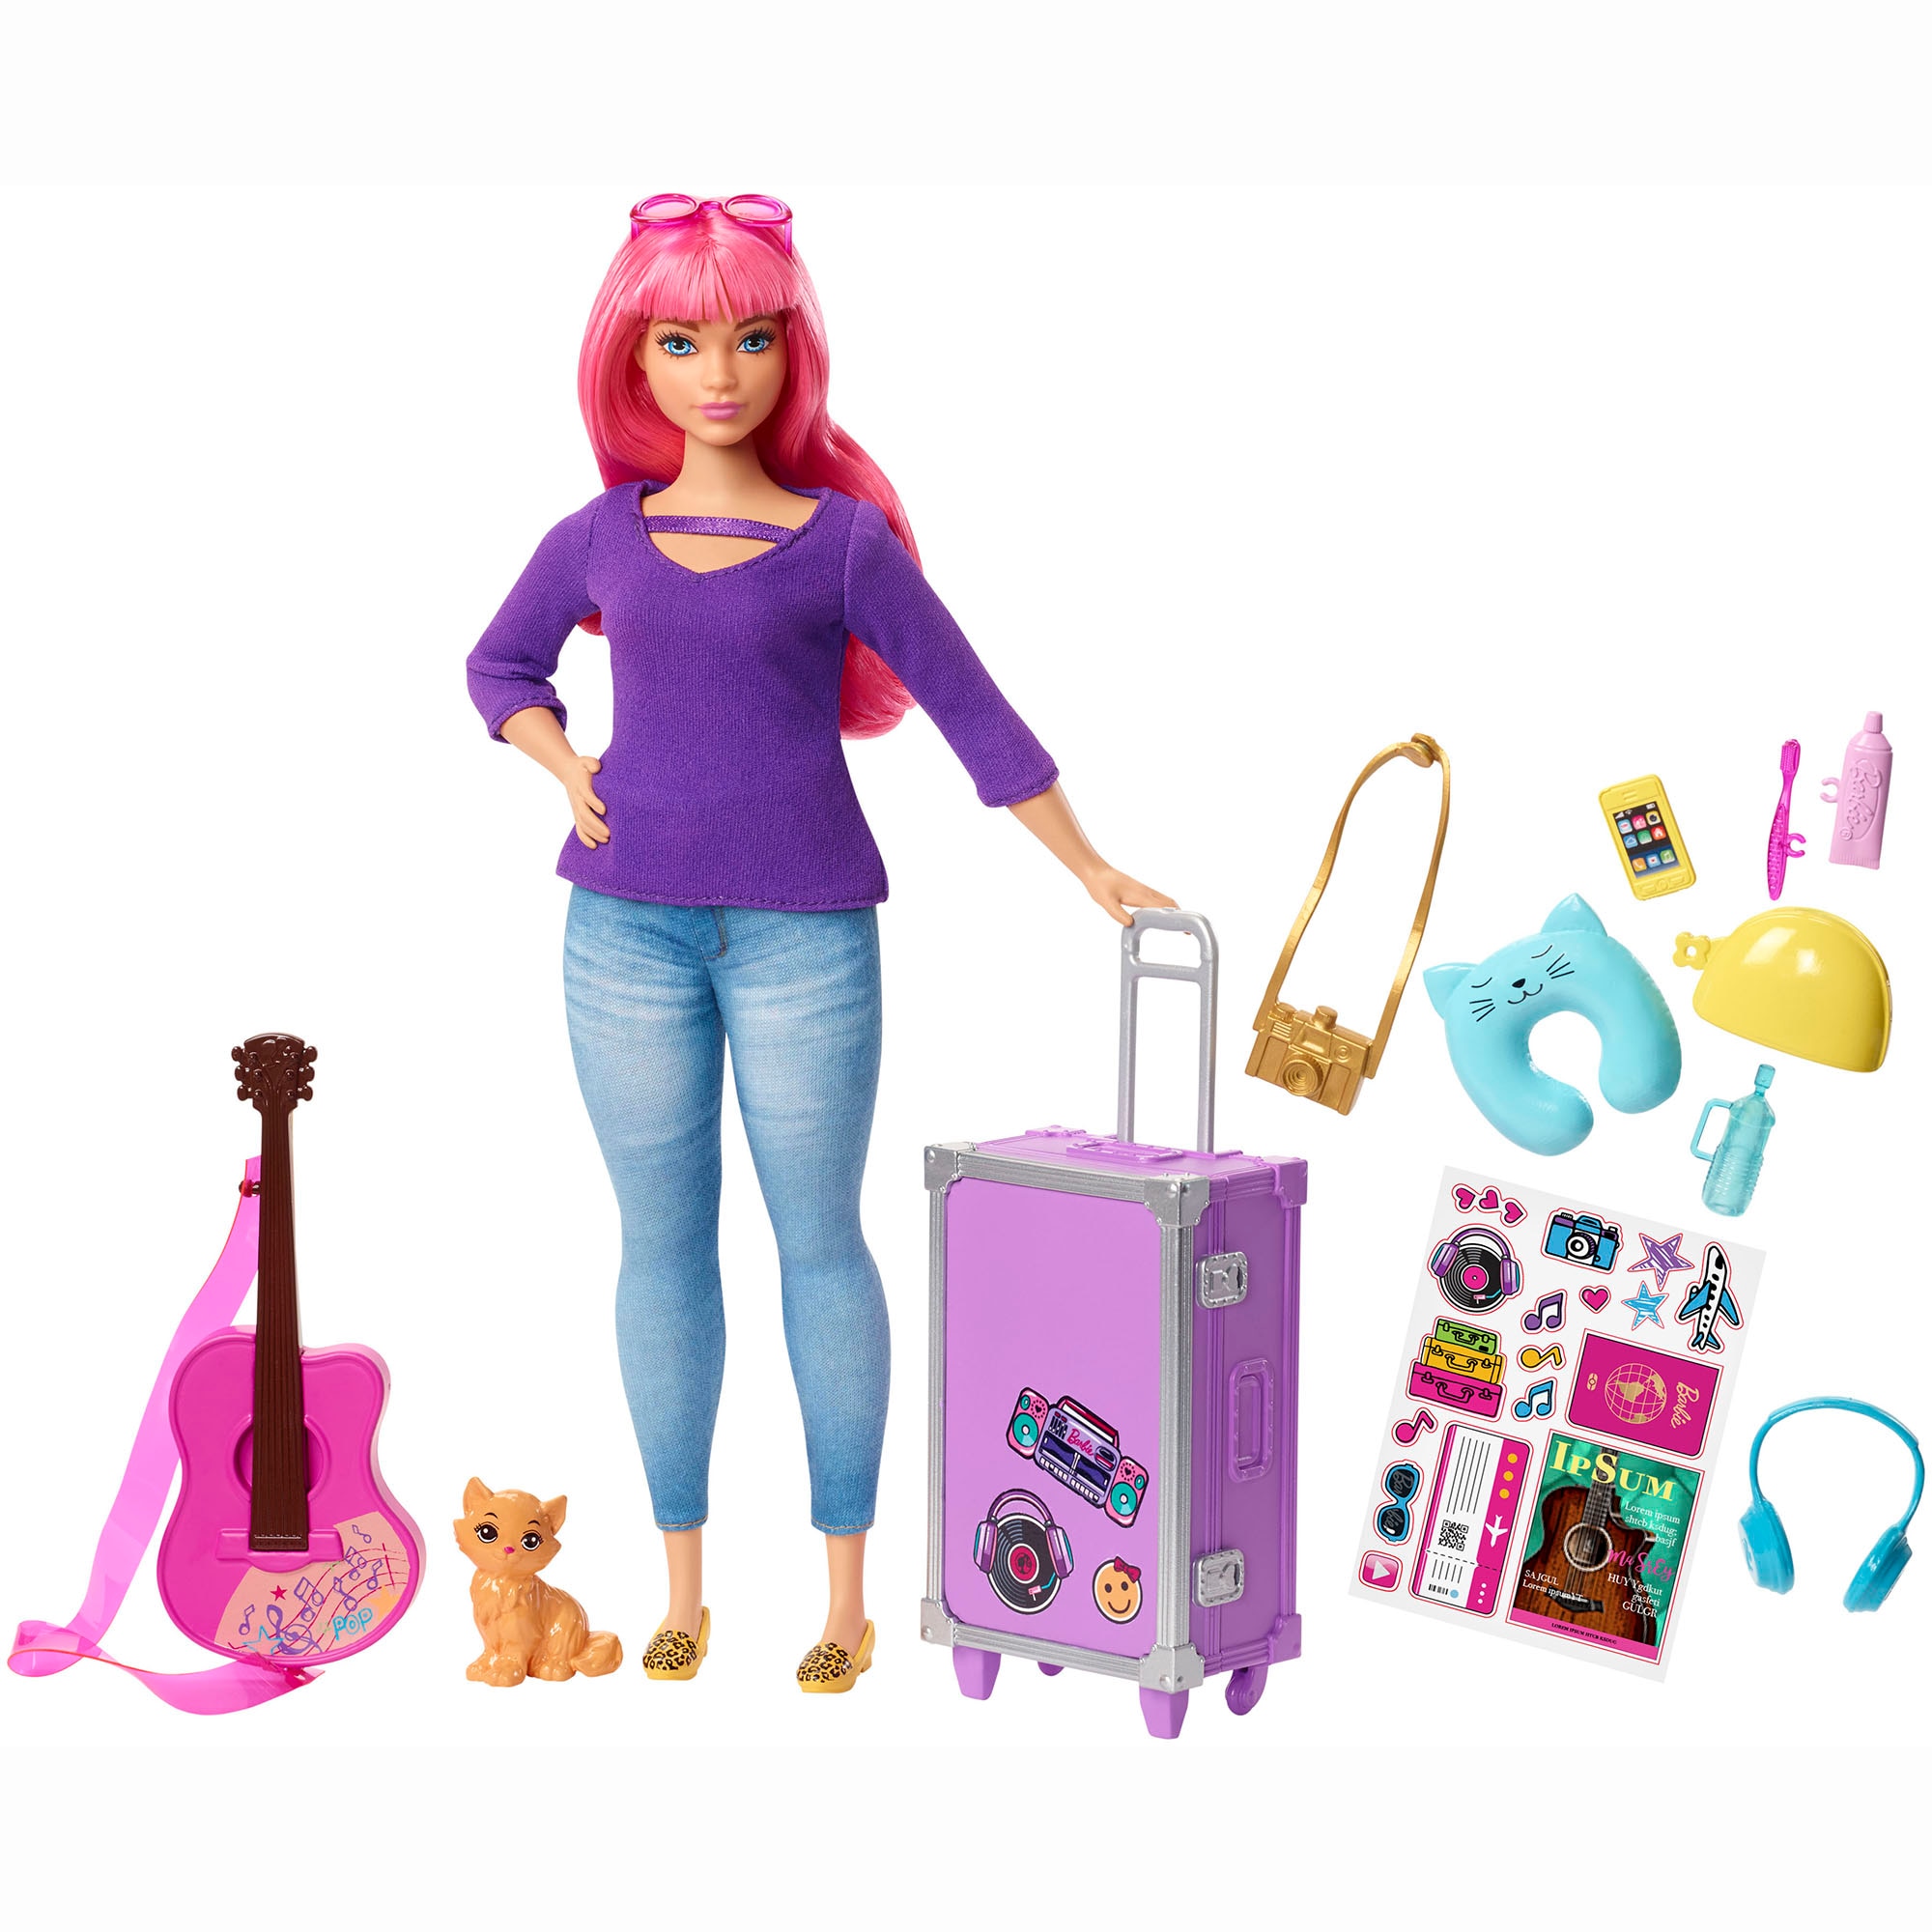 Игрушки для девушек купить. Кукла Барби путешественница Дейзи. Кукла Барби Дейзи fwv26. Кукла Barbie Дейзи с аксессуарами, 28.5 см, fwv26. Игровой набор Barbie путешествия Дейзи fwv26.